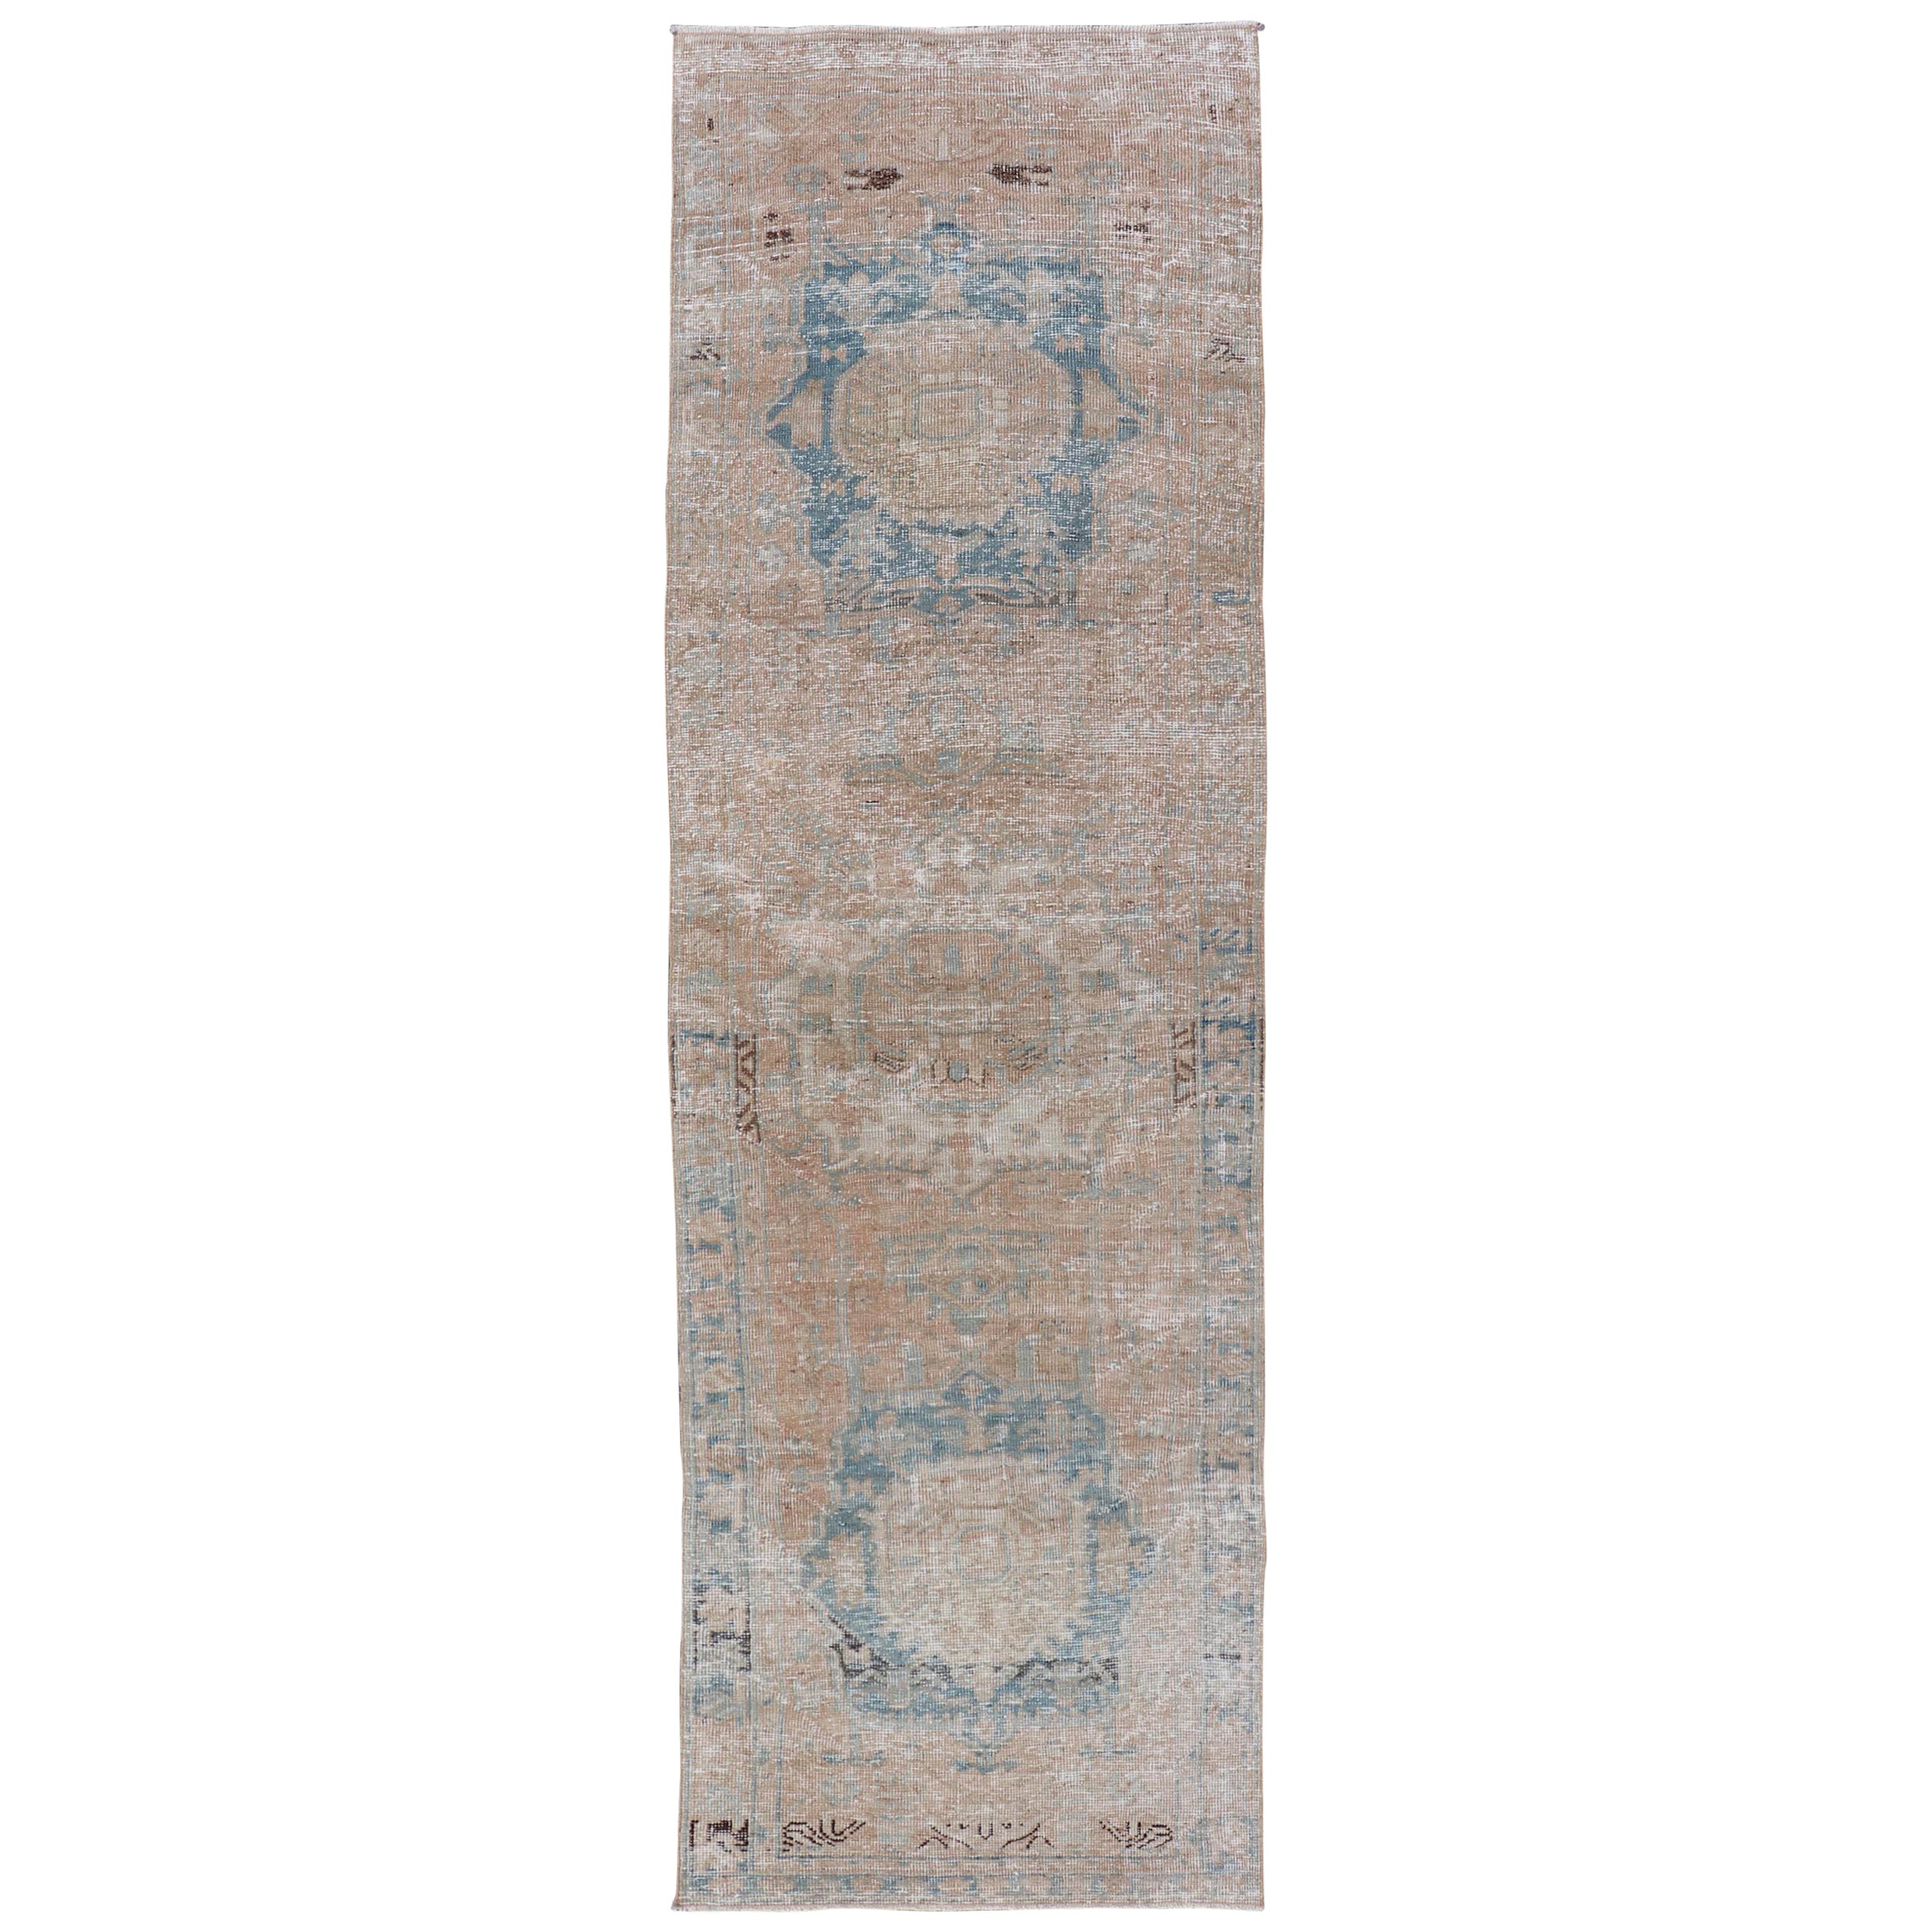 Tapis de couloir persan Heriz vintage avec médaillons dans des tons terreux et bleu clair